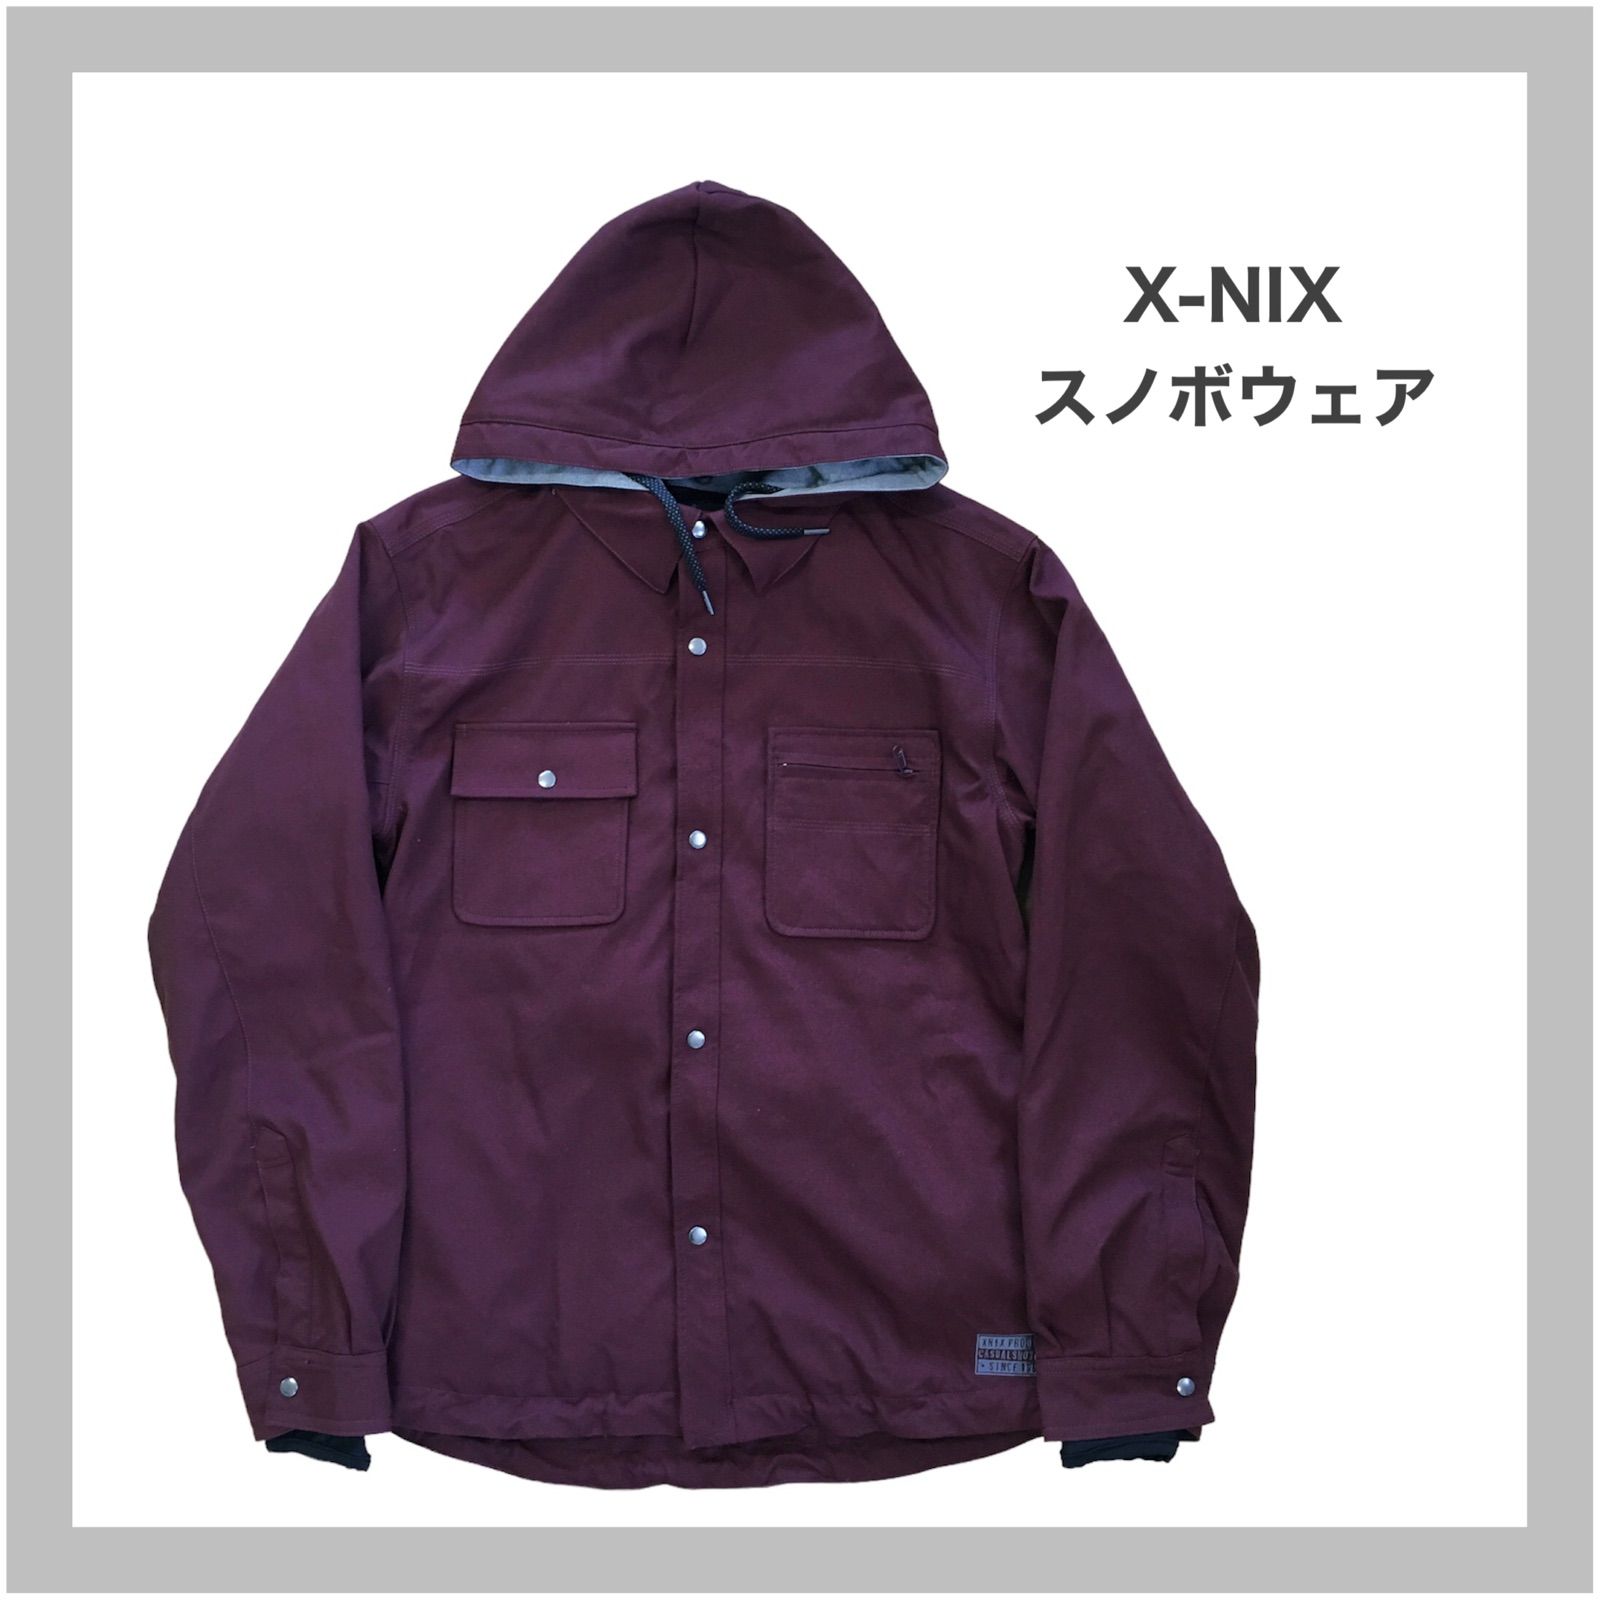 X-nix エクスニクス スノボウェア スキーウェア - スキー